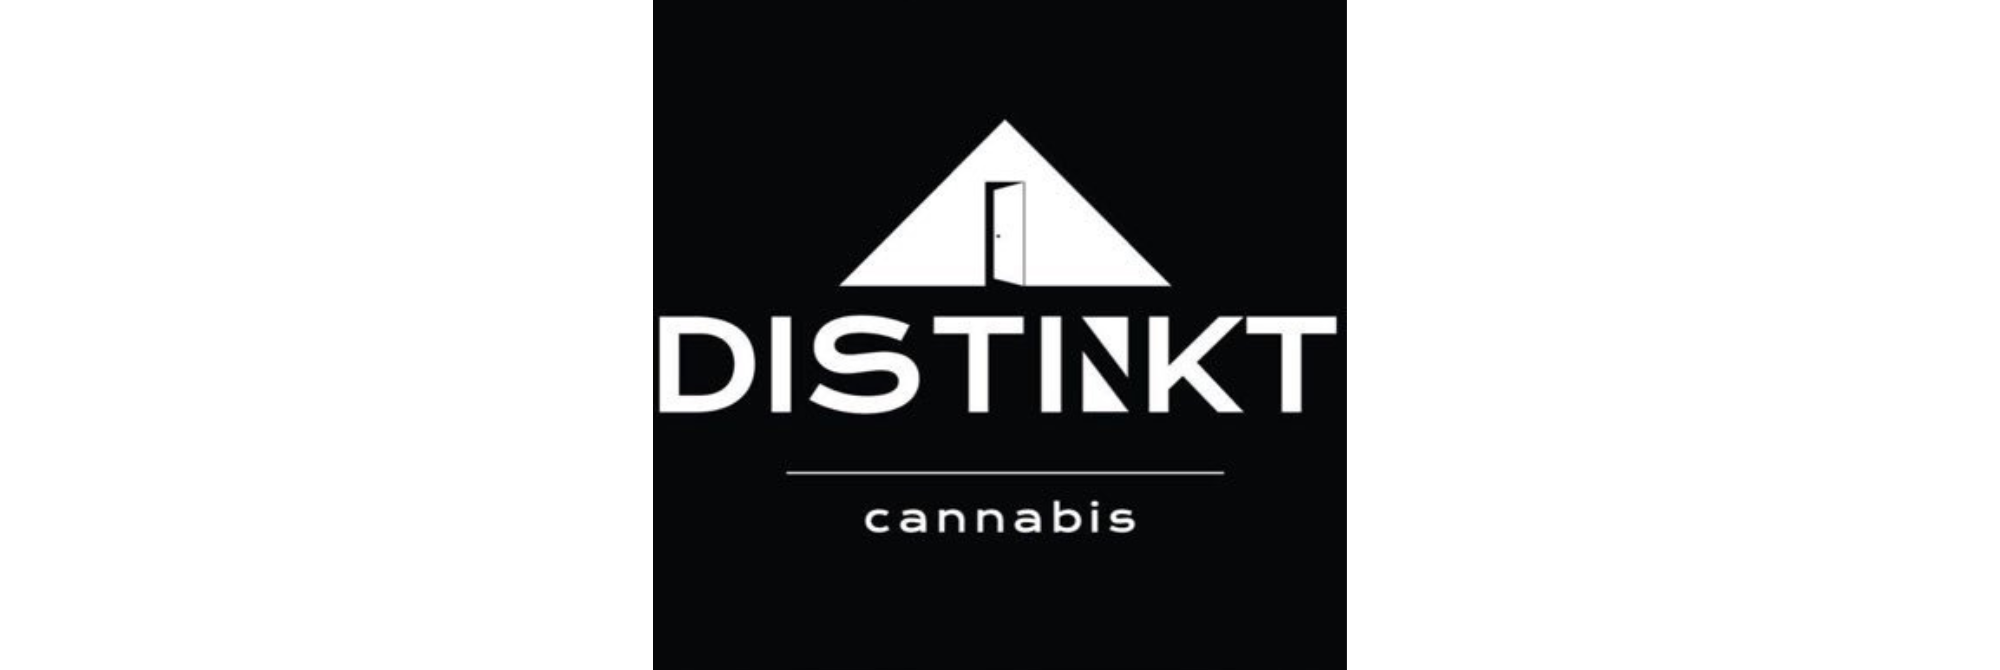 Distinkt Cannabis Ltd